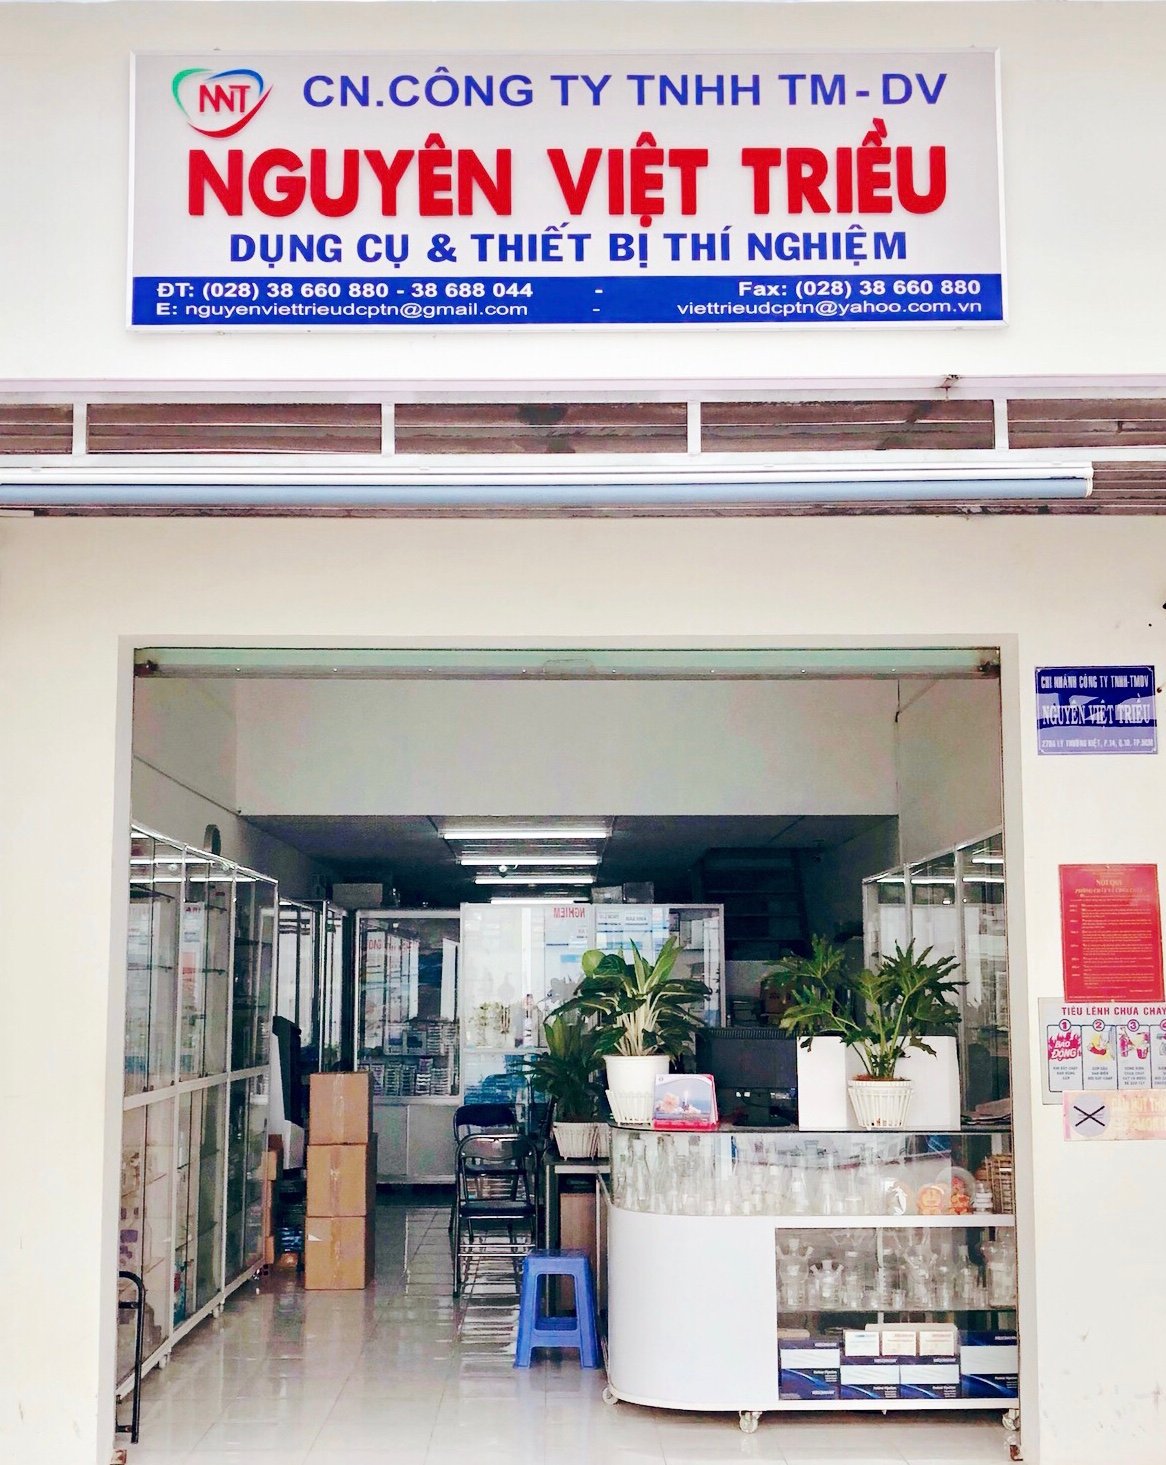 Phễu chiết mua ở đâu? cách sử dụng và các loại phễu chiết - Dụng cụ thí nghiệm Nguyên Việt Triều